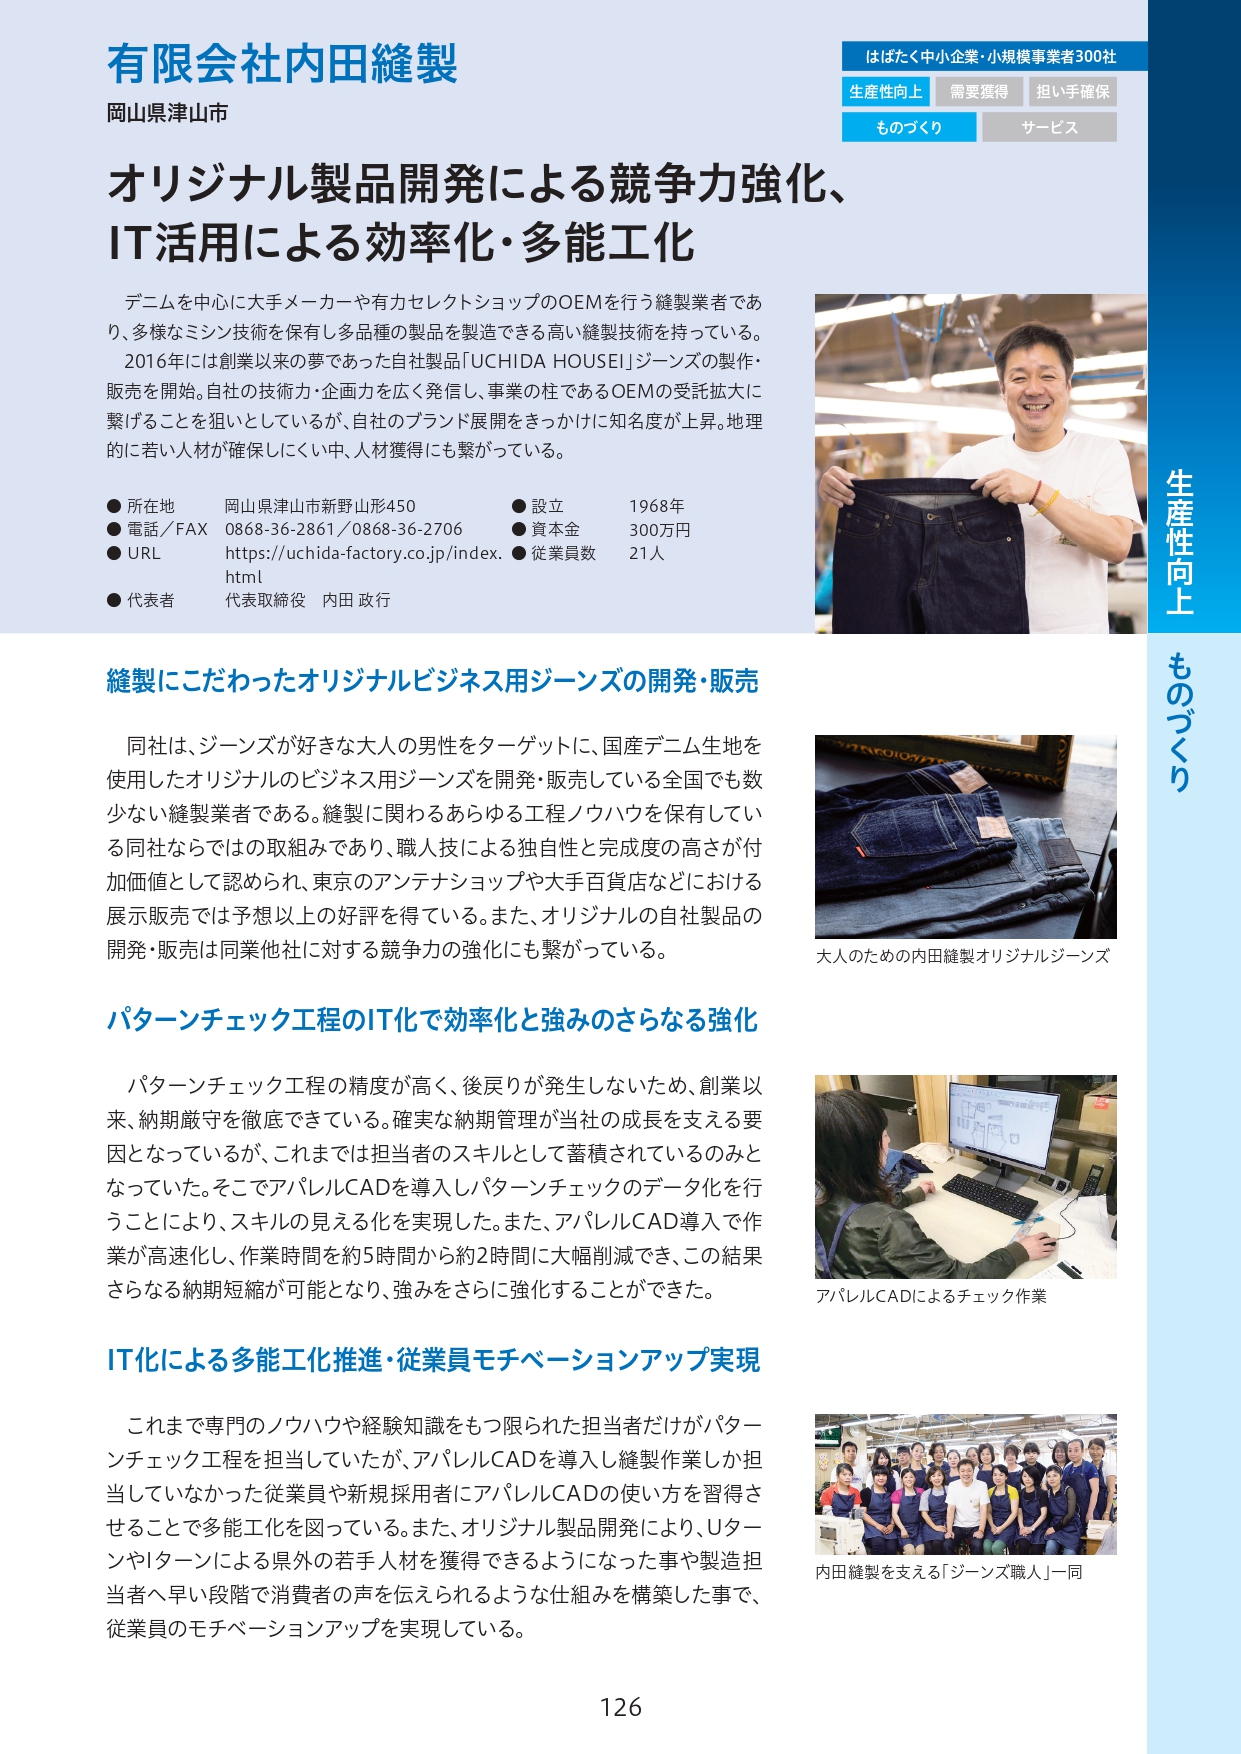 【NEWS】内田縫製が「はばたく中小企業・小規模事業者300社」に選定されました